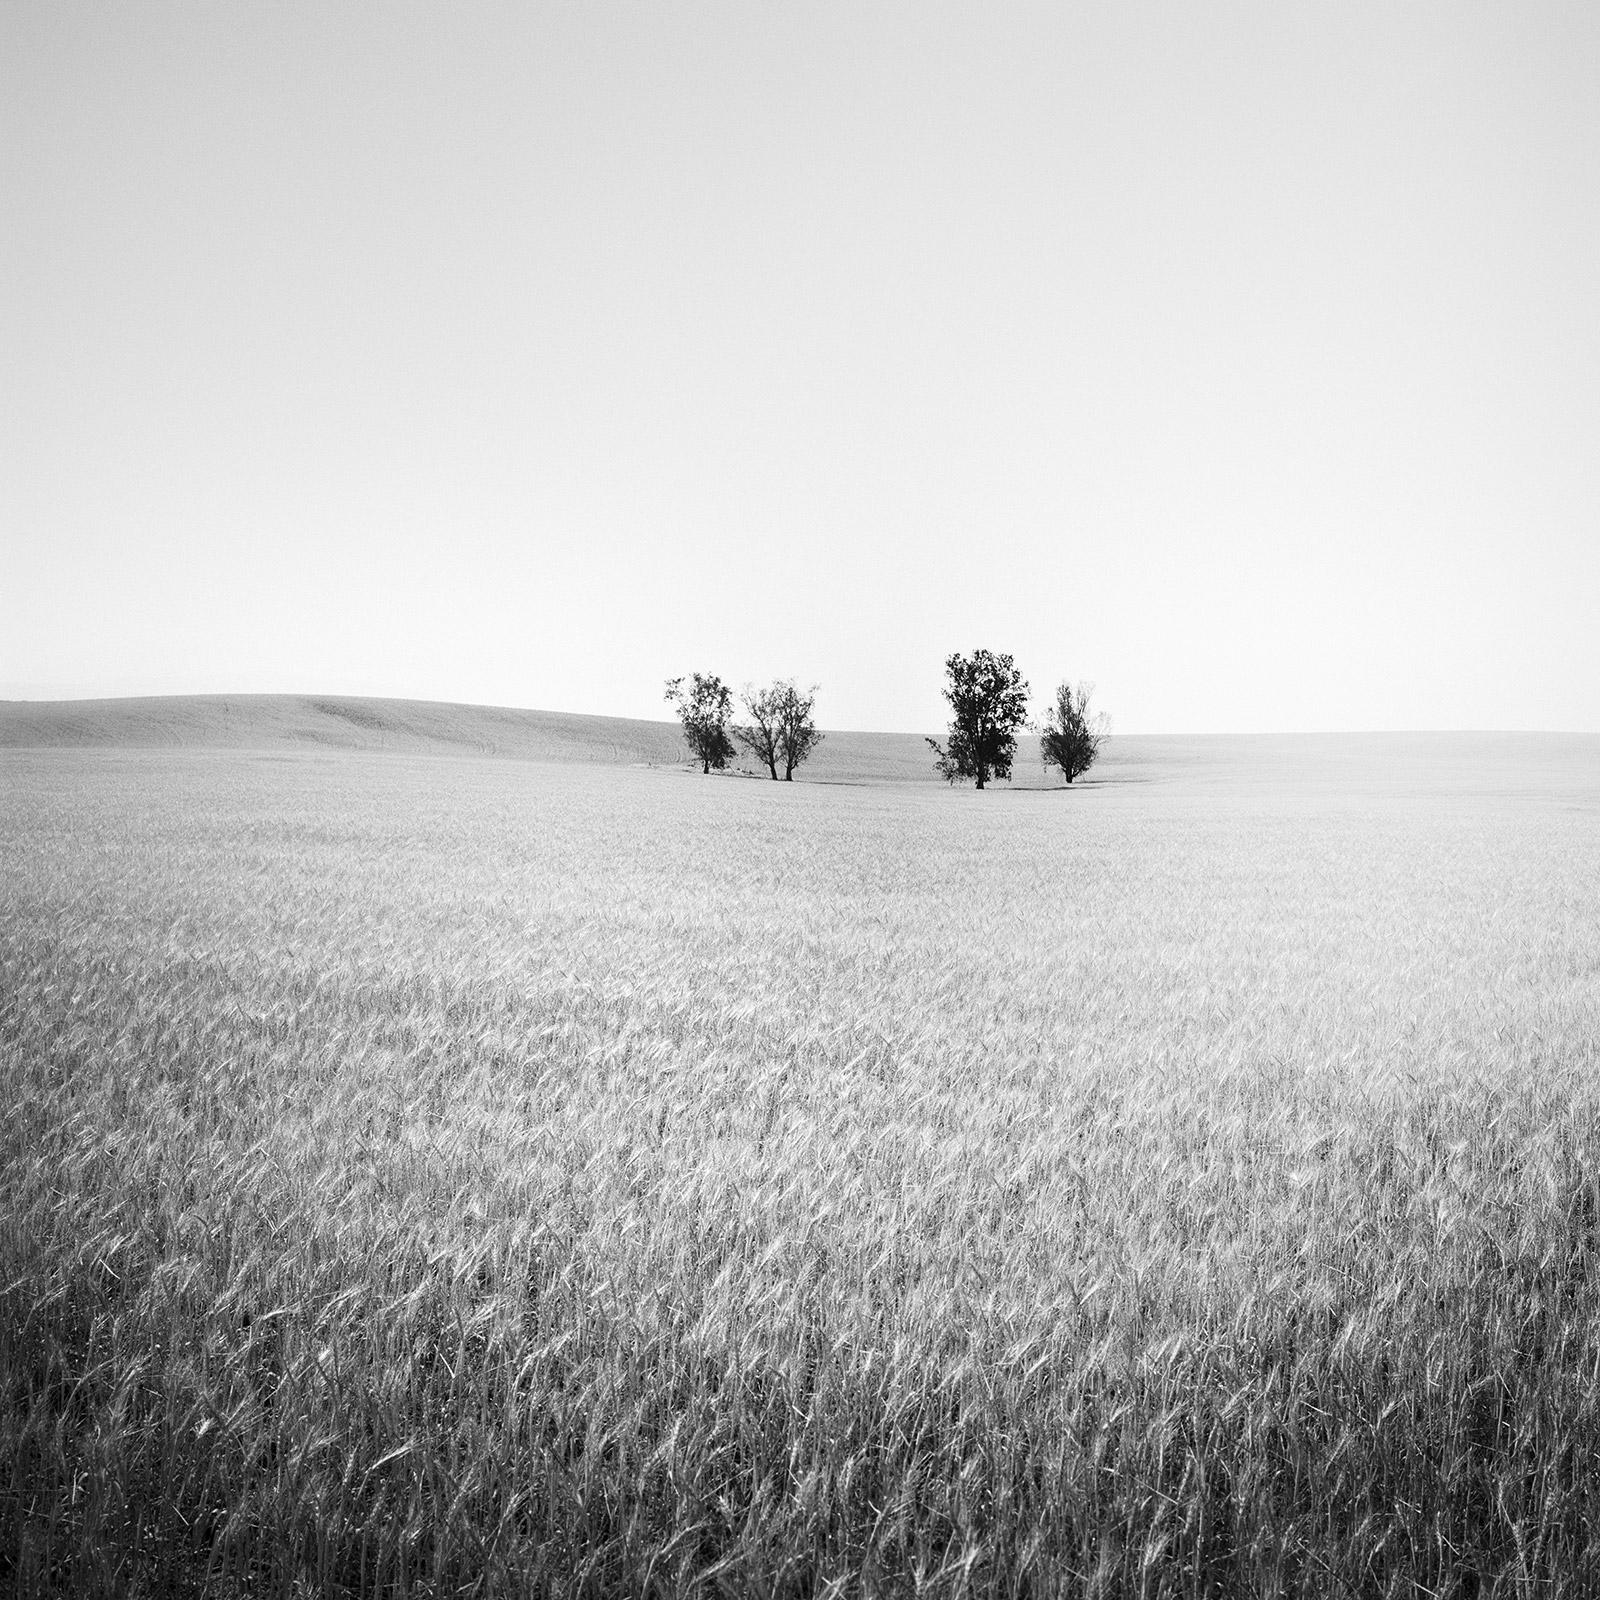 Gerald Berghammer Landscape Photograph – Bäume auf Weizen field, Kalifornien, USA, Schwarz-Weiß-Landschaftsfotografie